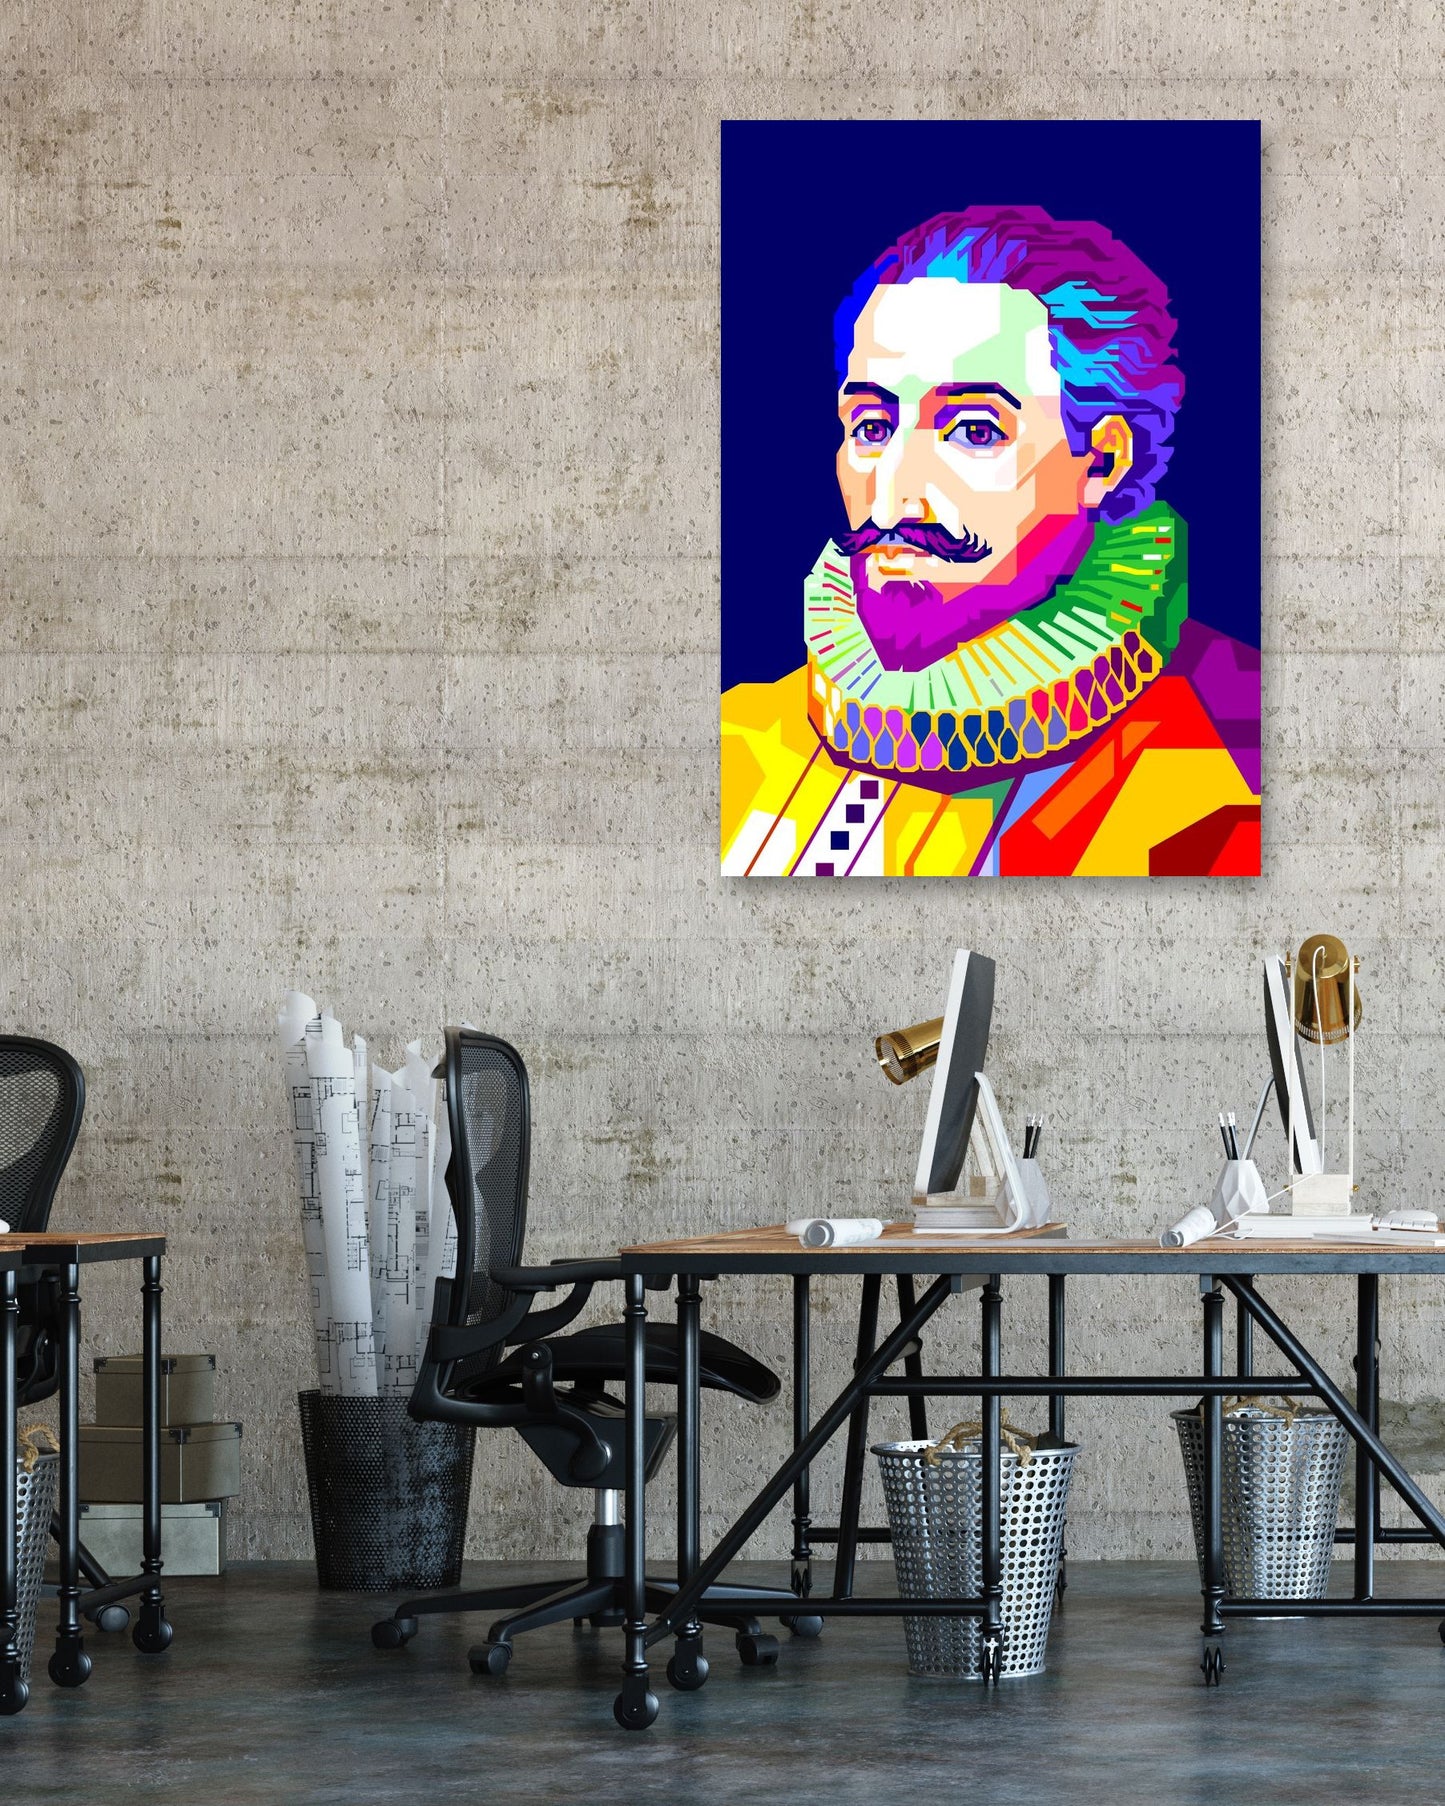 Miguel de Cervantes in Pop Art with Navy Background - @WPAPbyiant